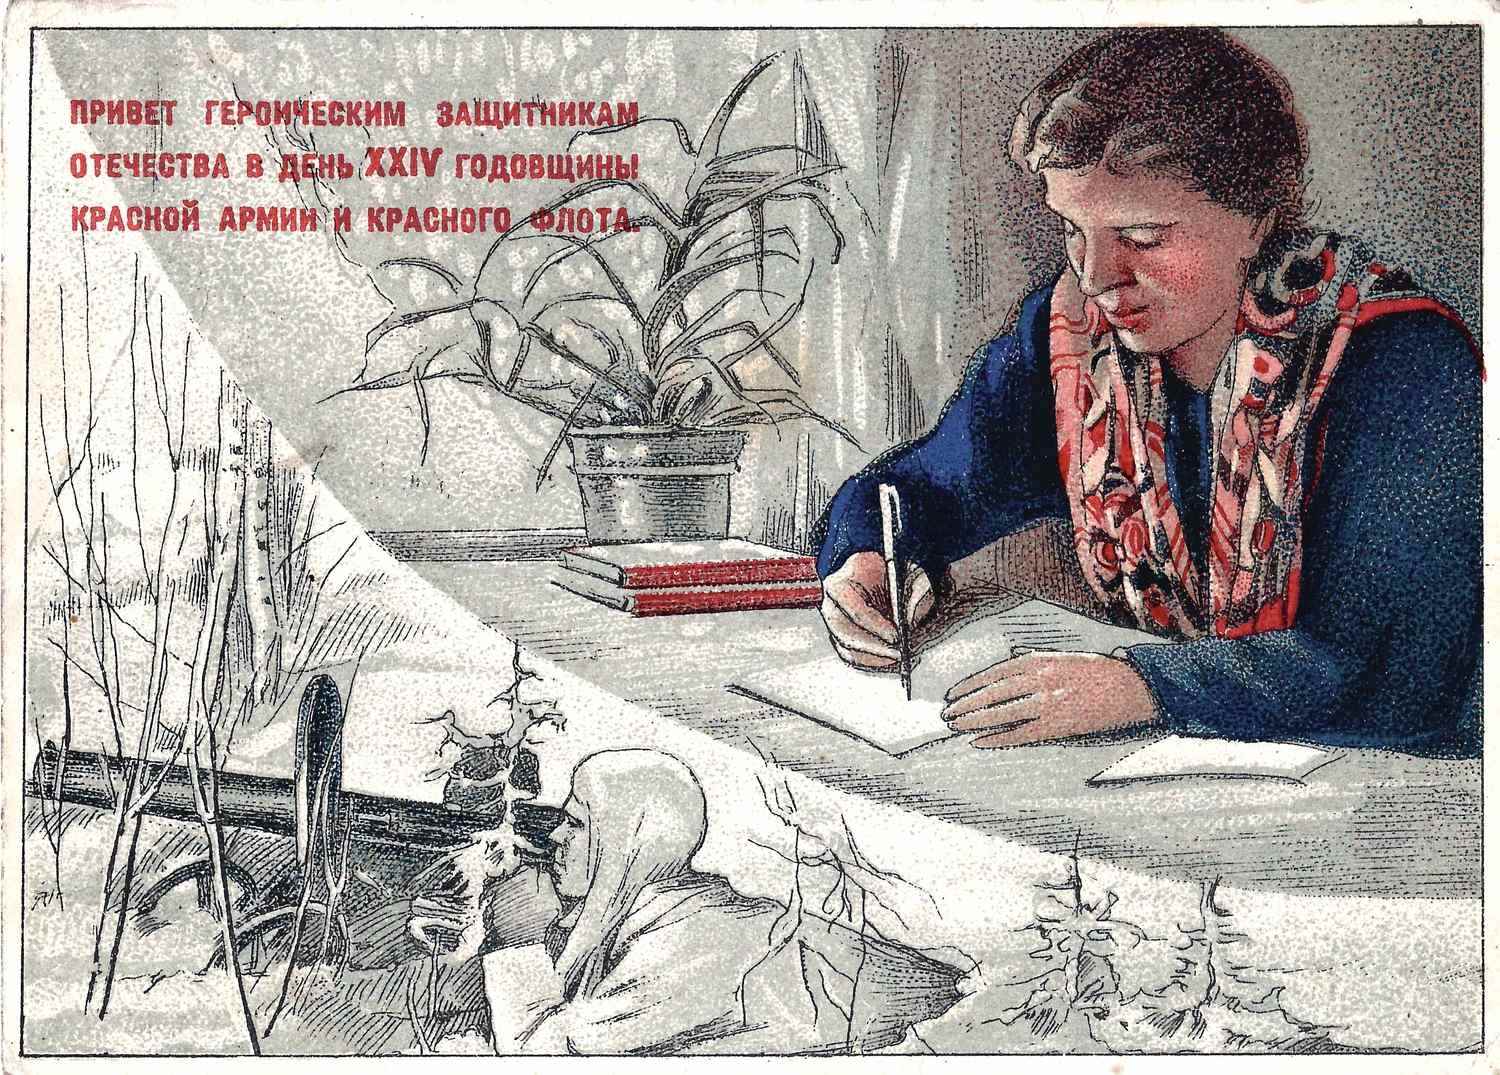 9 художественных поздравительных открыток периода Великой Отечественной войны. 1940-е годы.